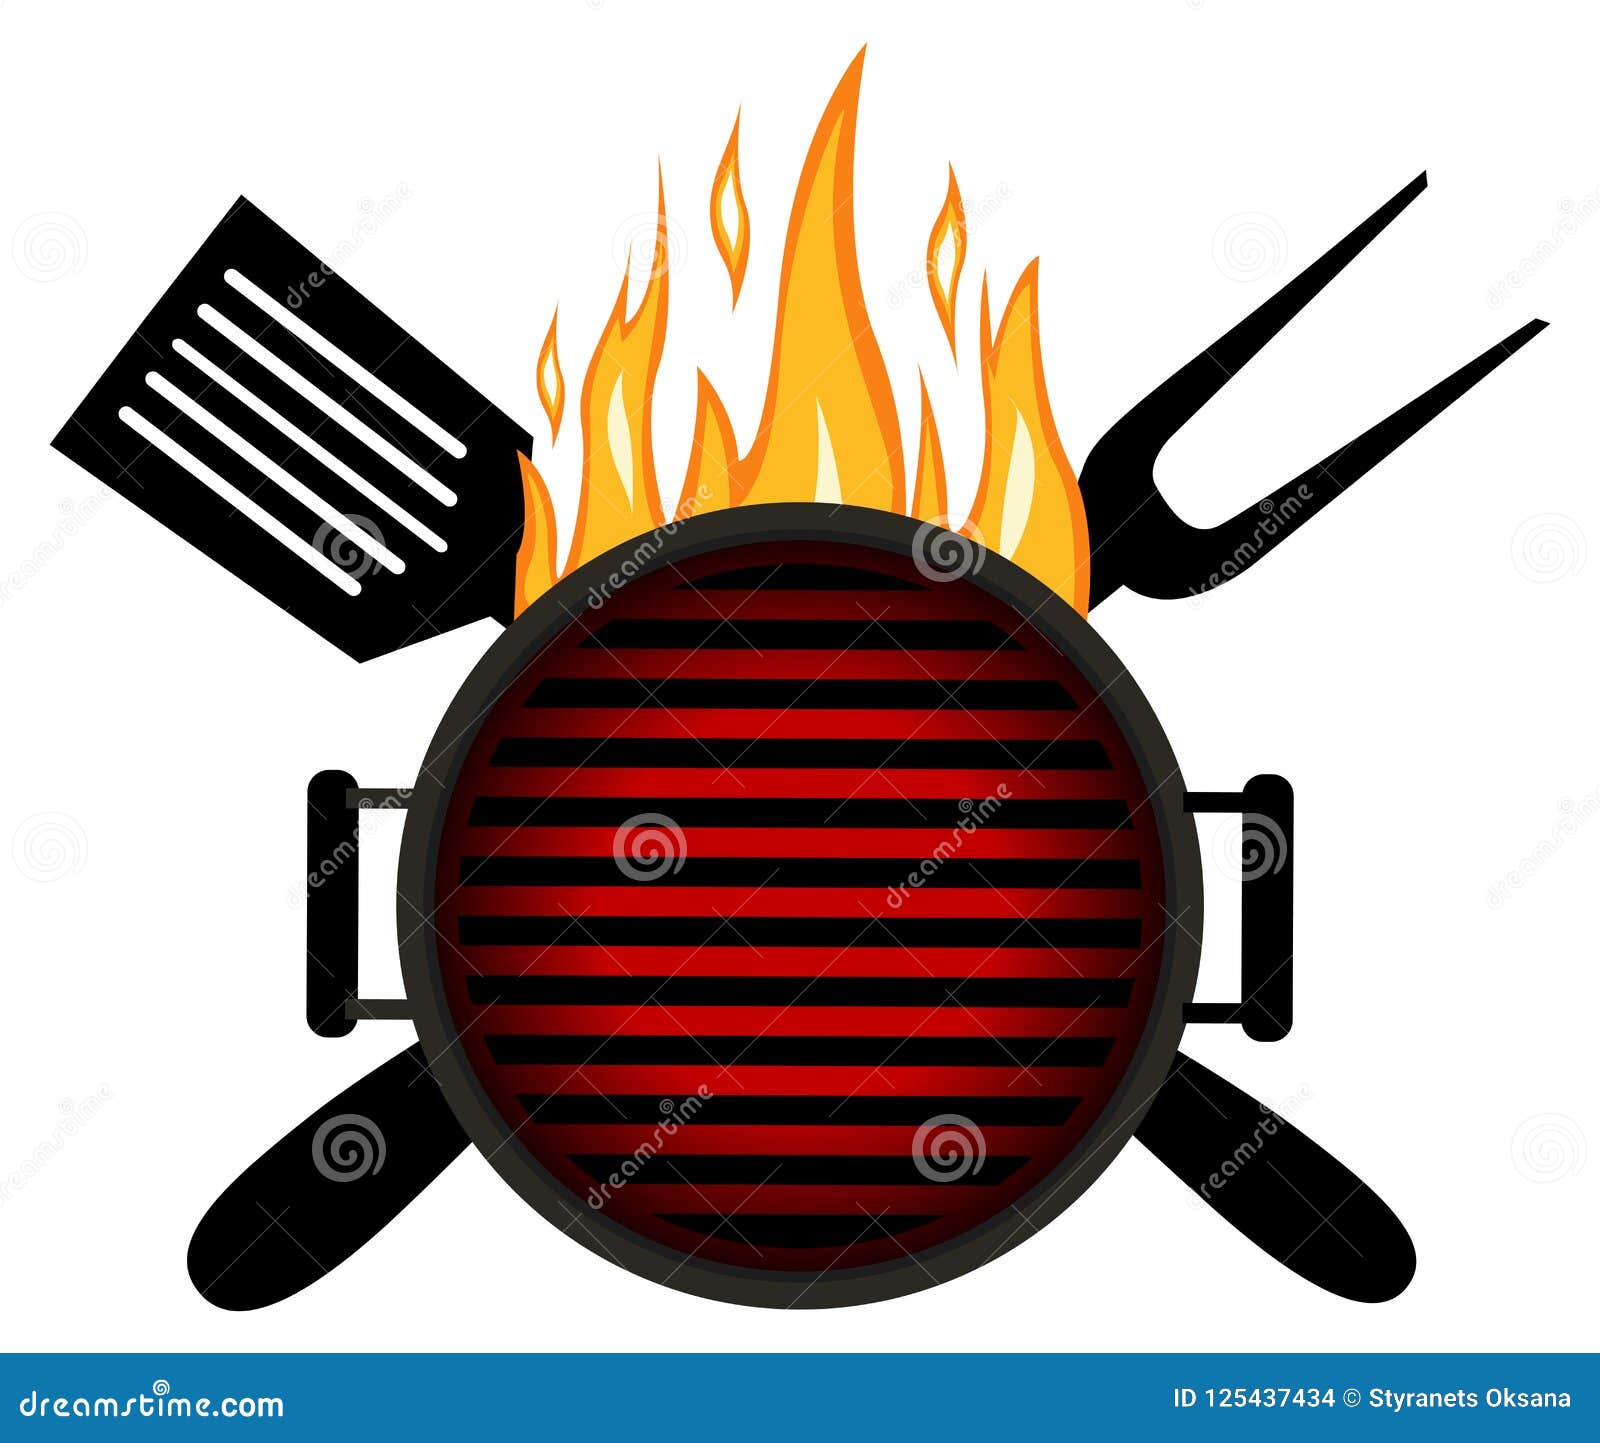 bbq logo. barbecue menu logo template desig